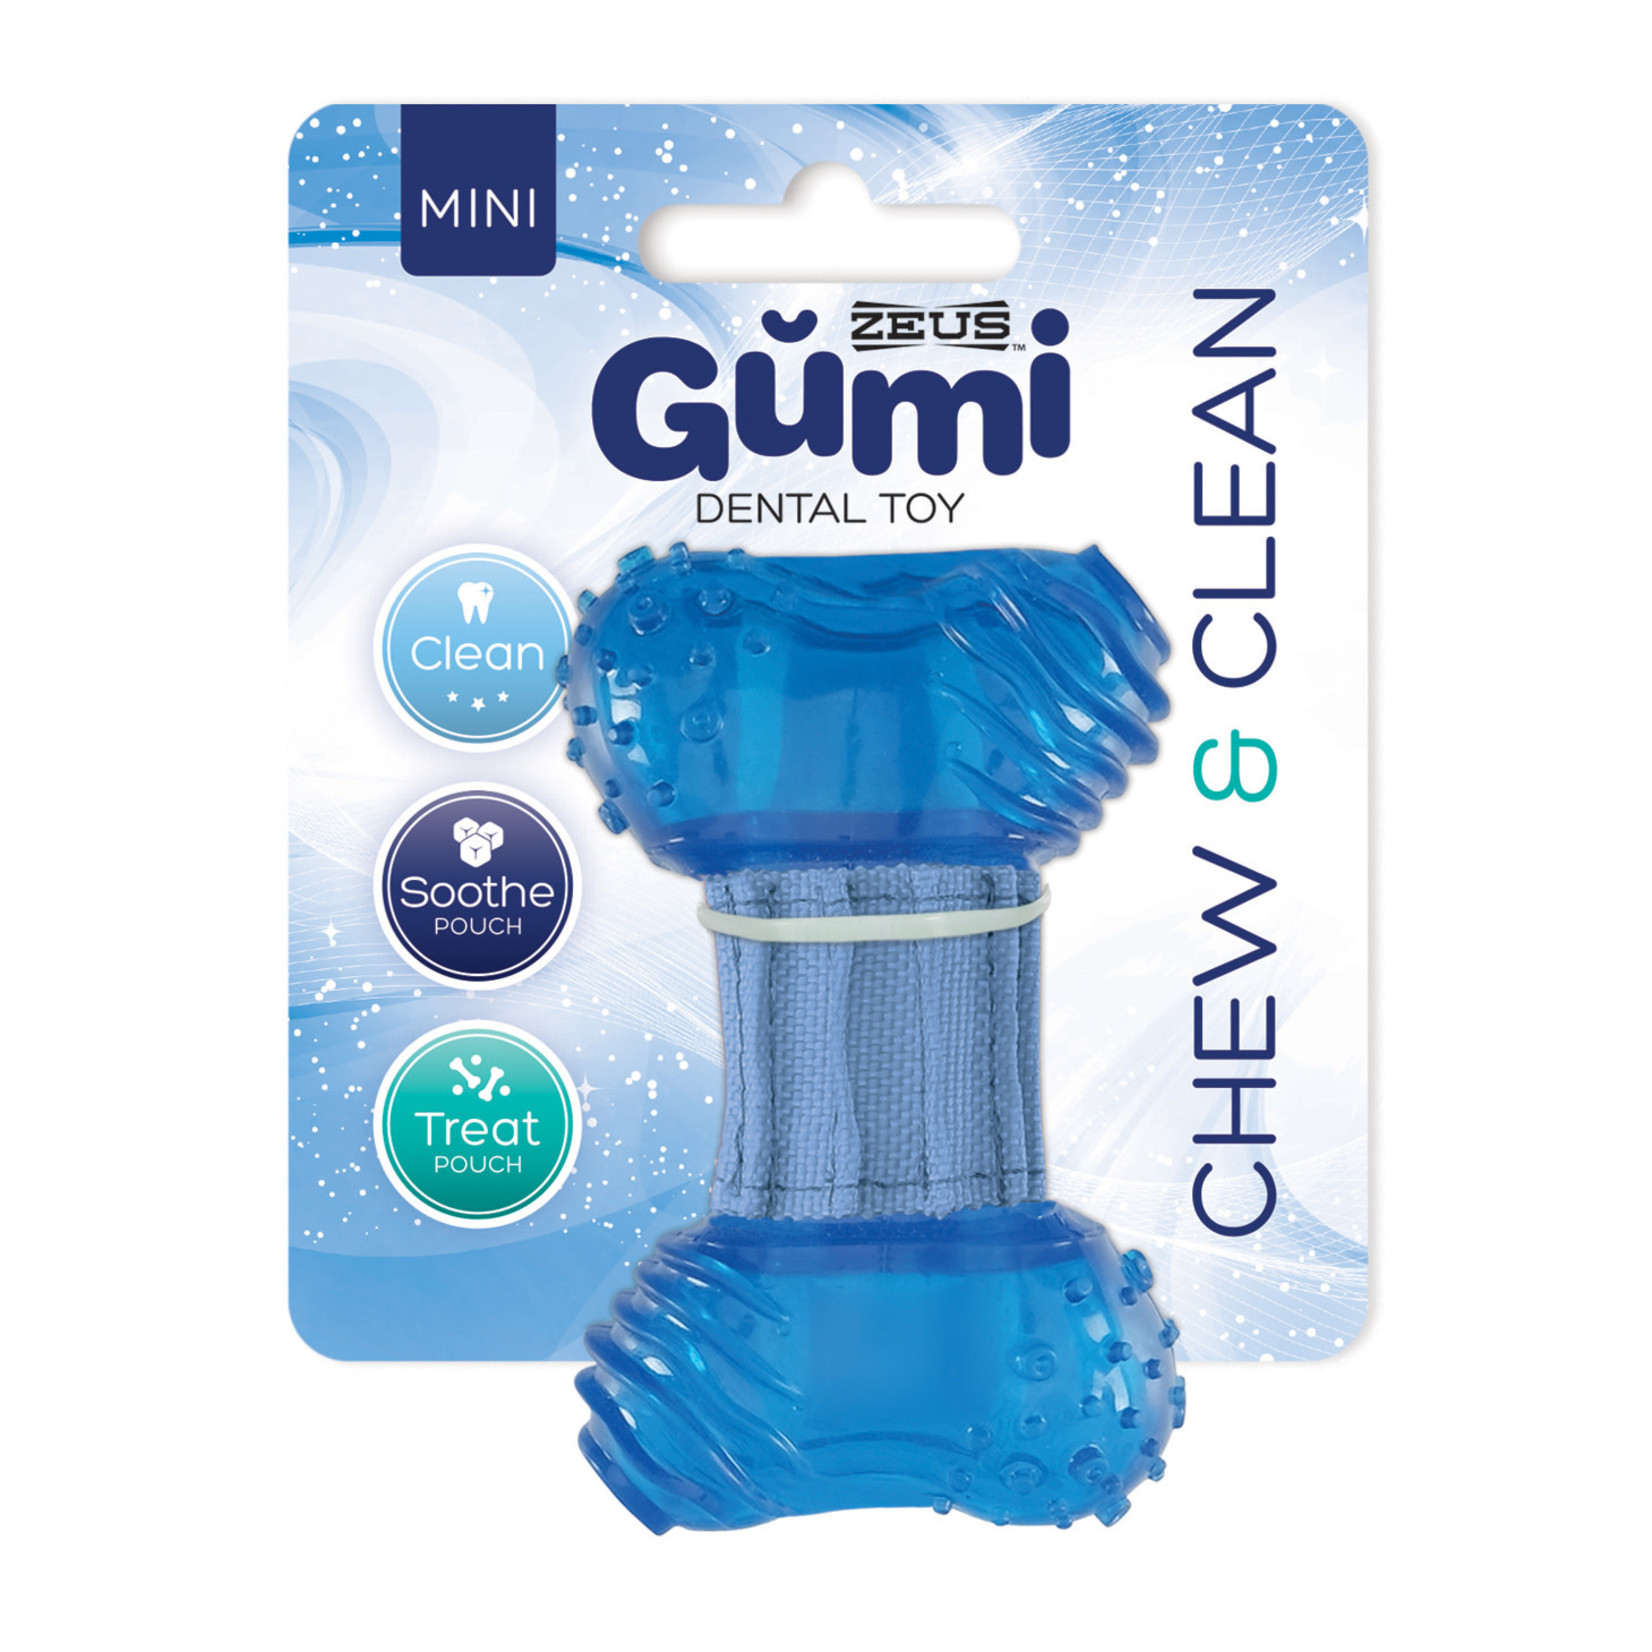 ZEUS (W) Zeus Gumi Dental Dog Toy - Chew & Clean - Mini